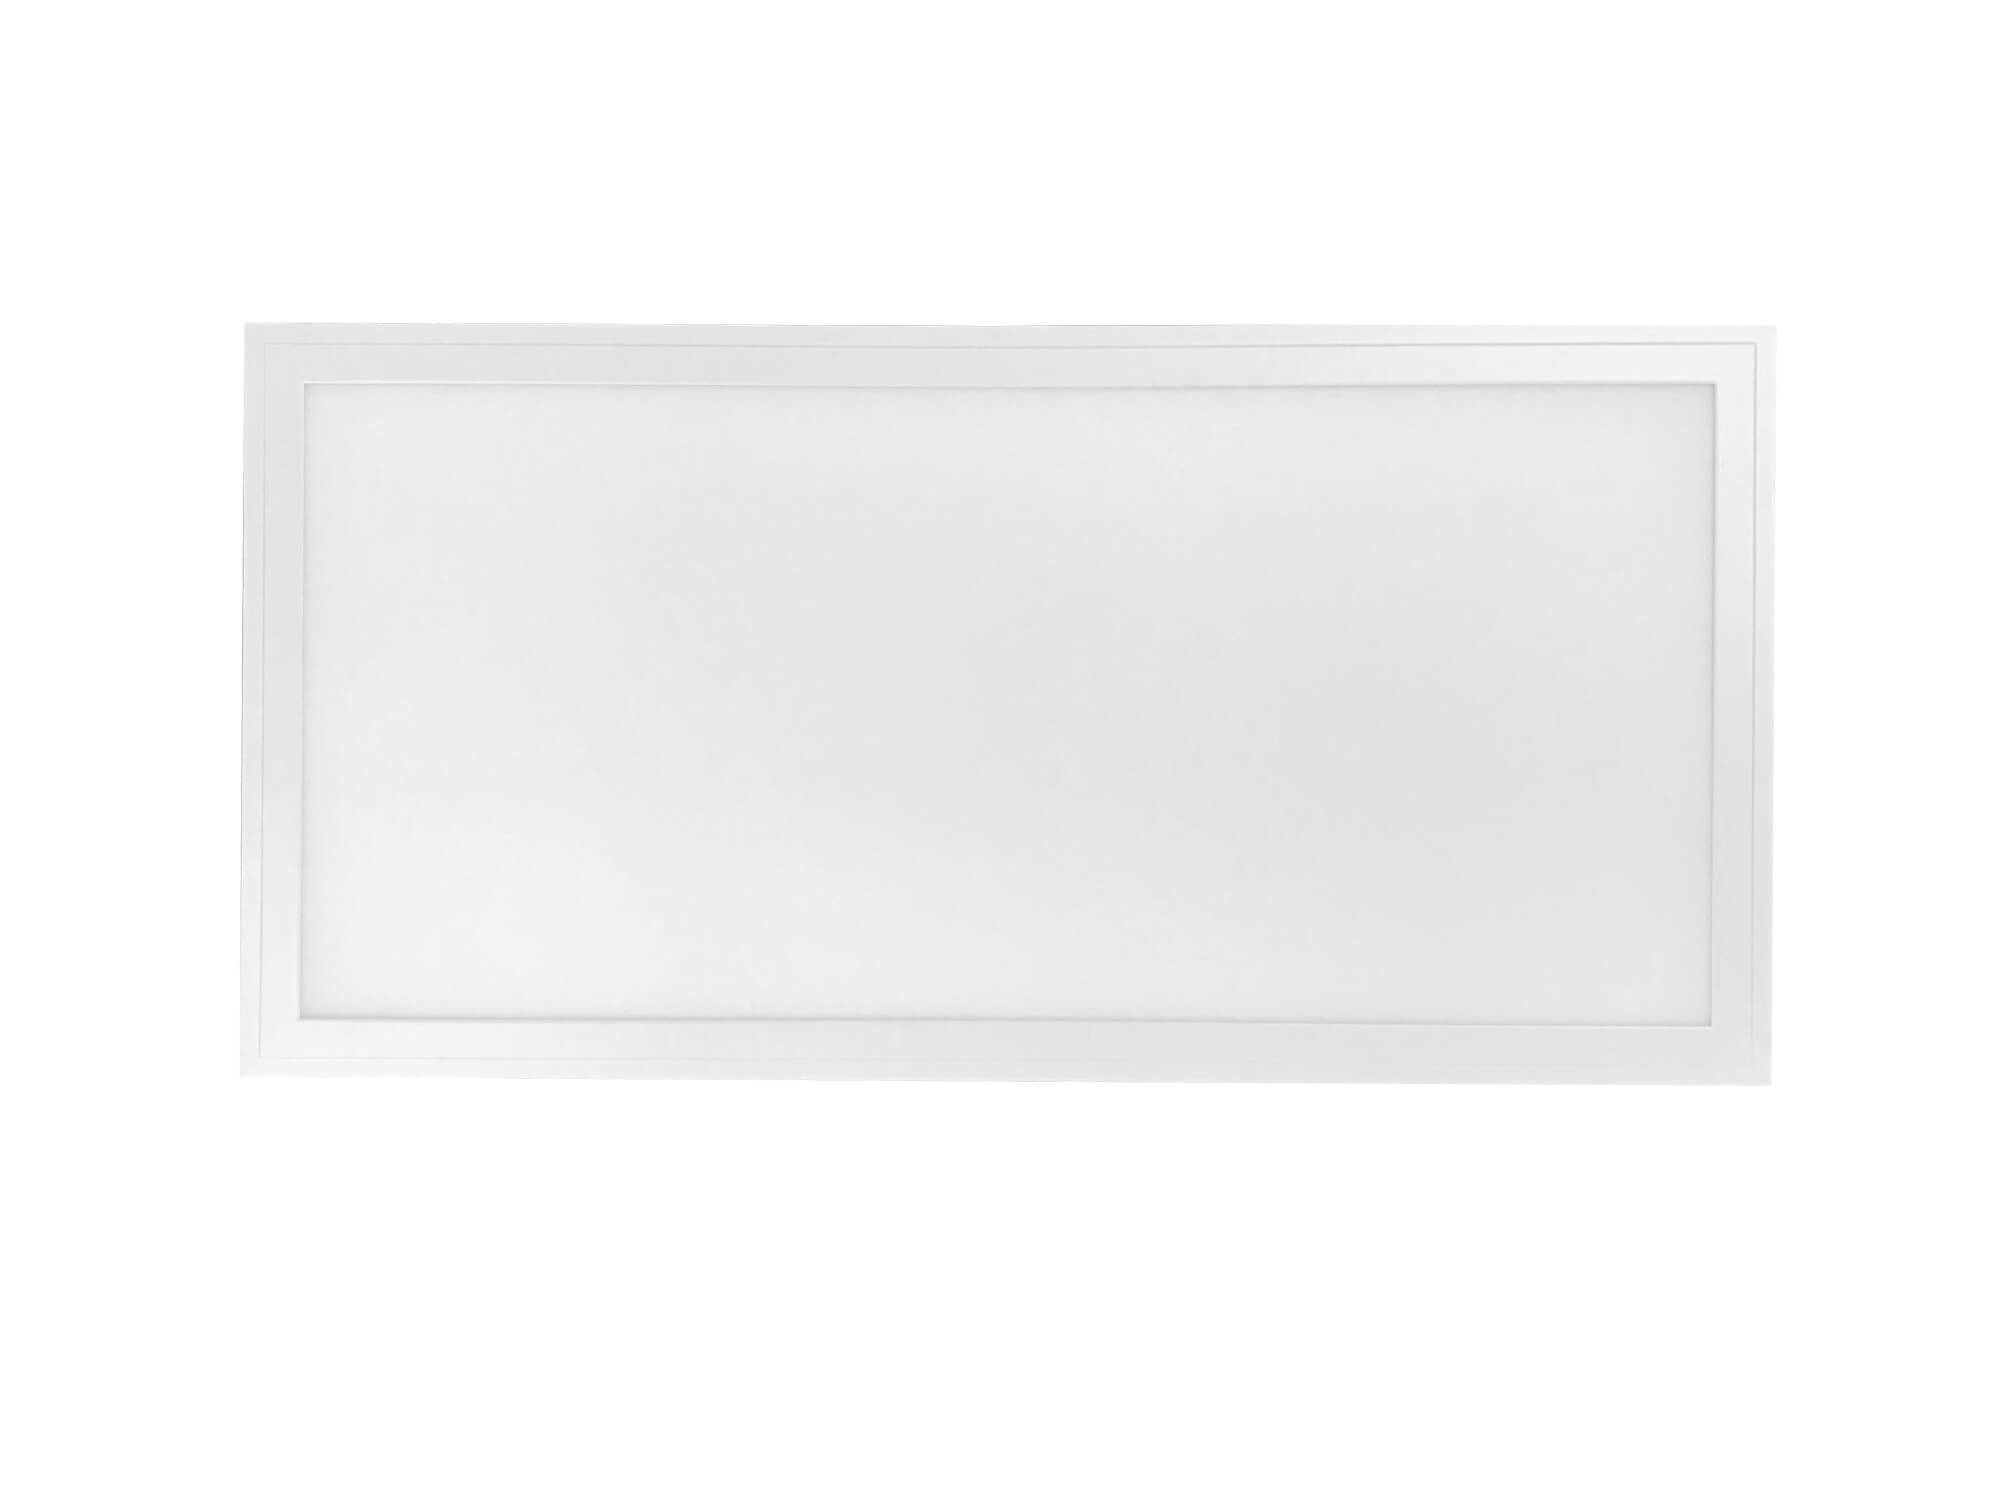 Lecom LED Panel 60x30 cm LED Panel Deckenleuchte Einbaupanel Ultraslim weißer Rahmen, 24 Watt, 2200 Lumen, Neutralweiß 4000K